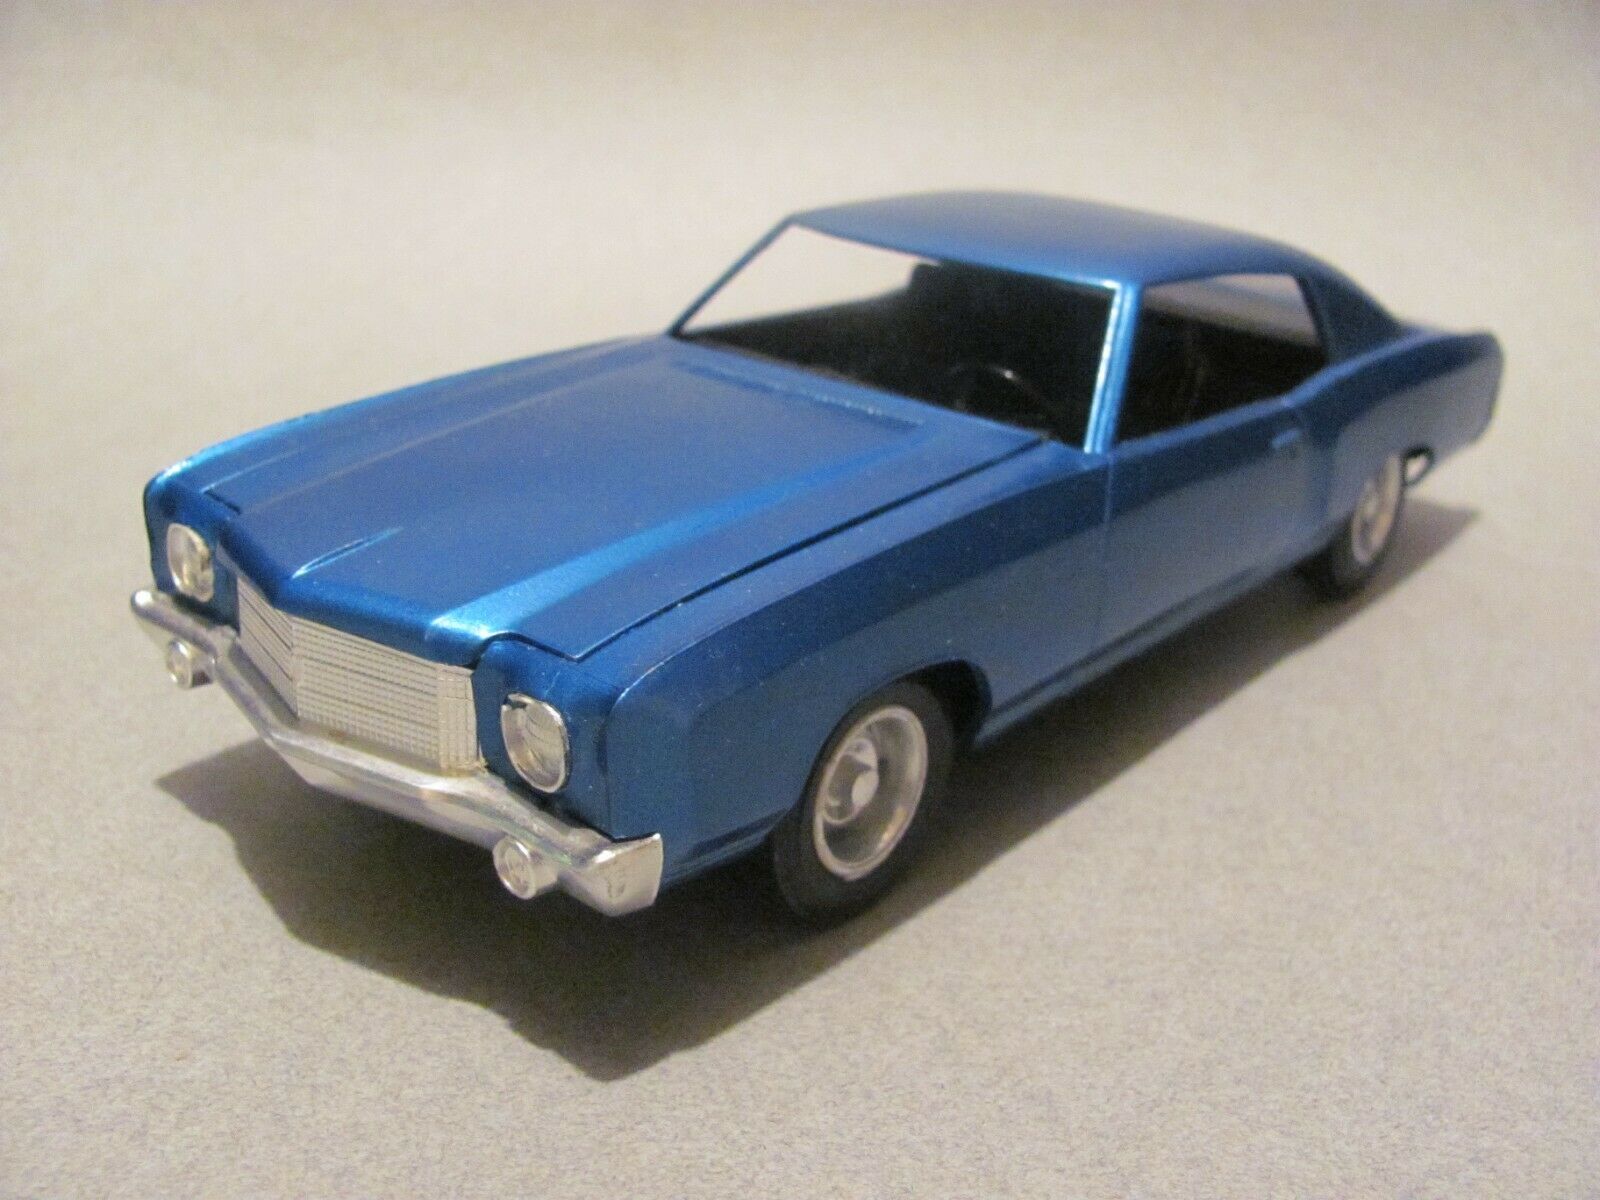 Vintage Amt 1970 Chevrolet Monte Carlo Built Kit - Blue Metallic, *excellent!